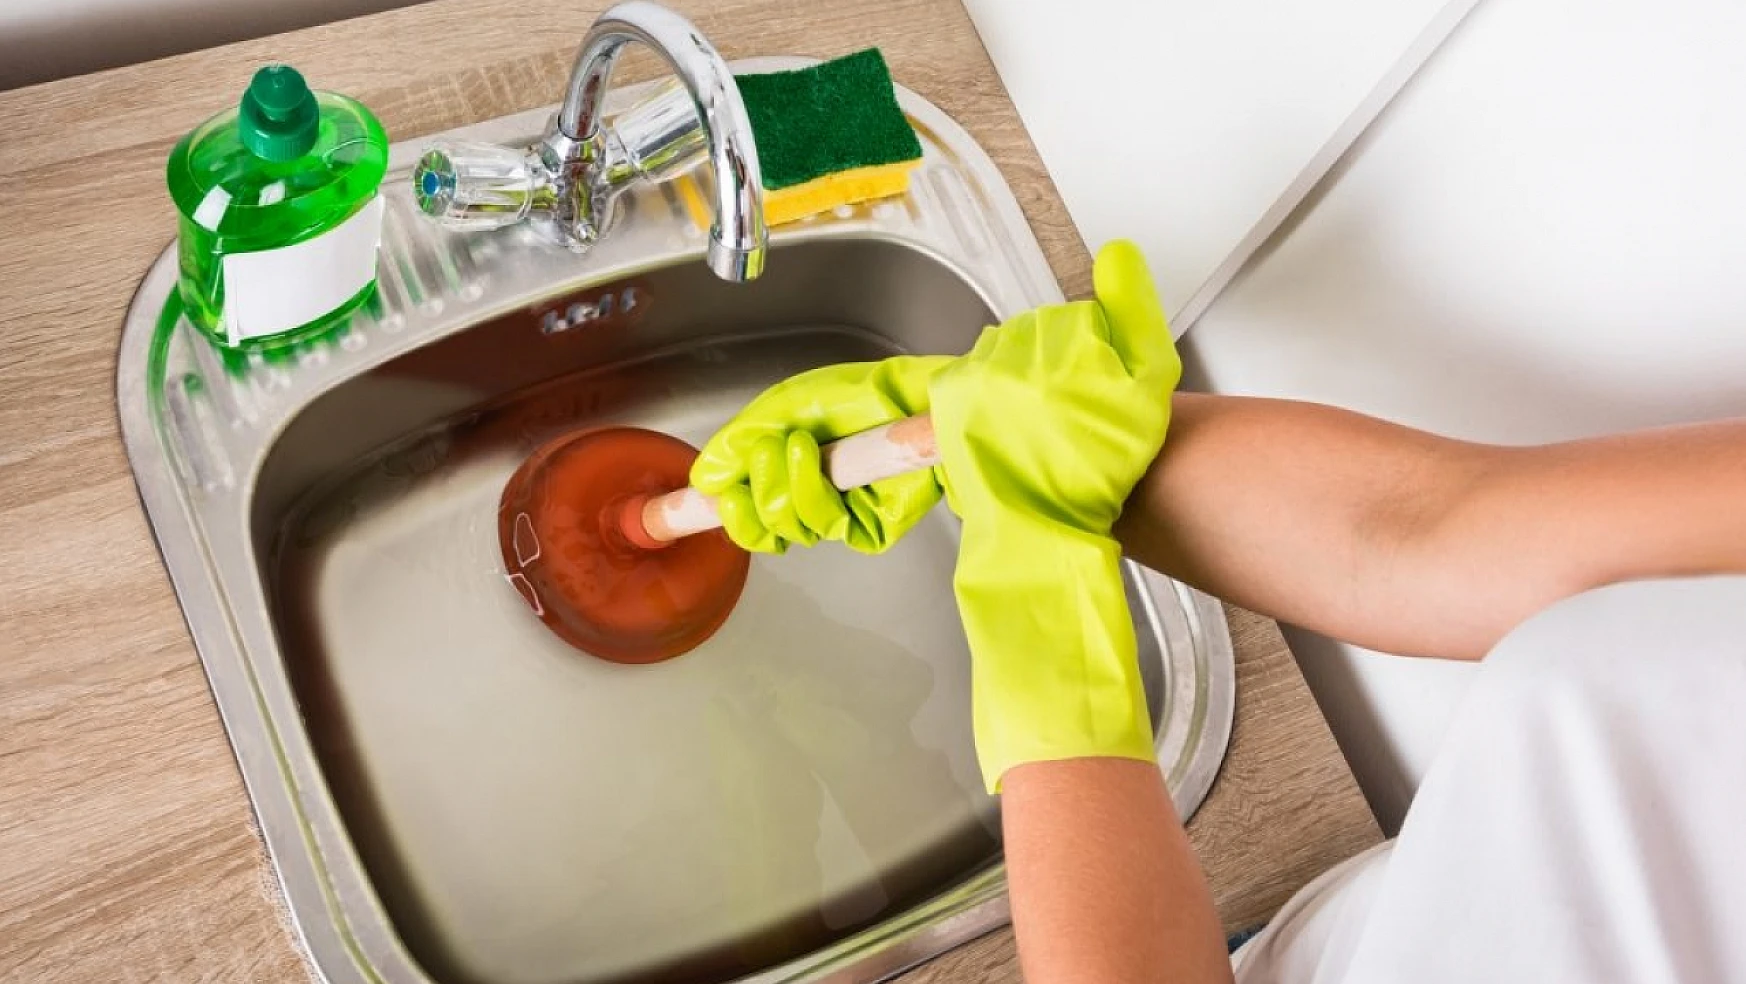 Mutfak, banyo, lavabo yüzeyleri temizlemenin püf noktaları neler?